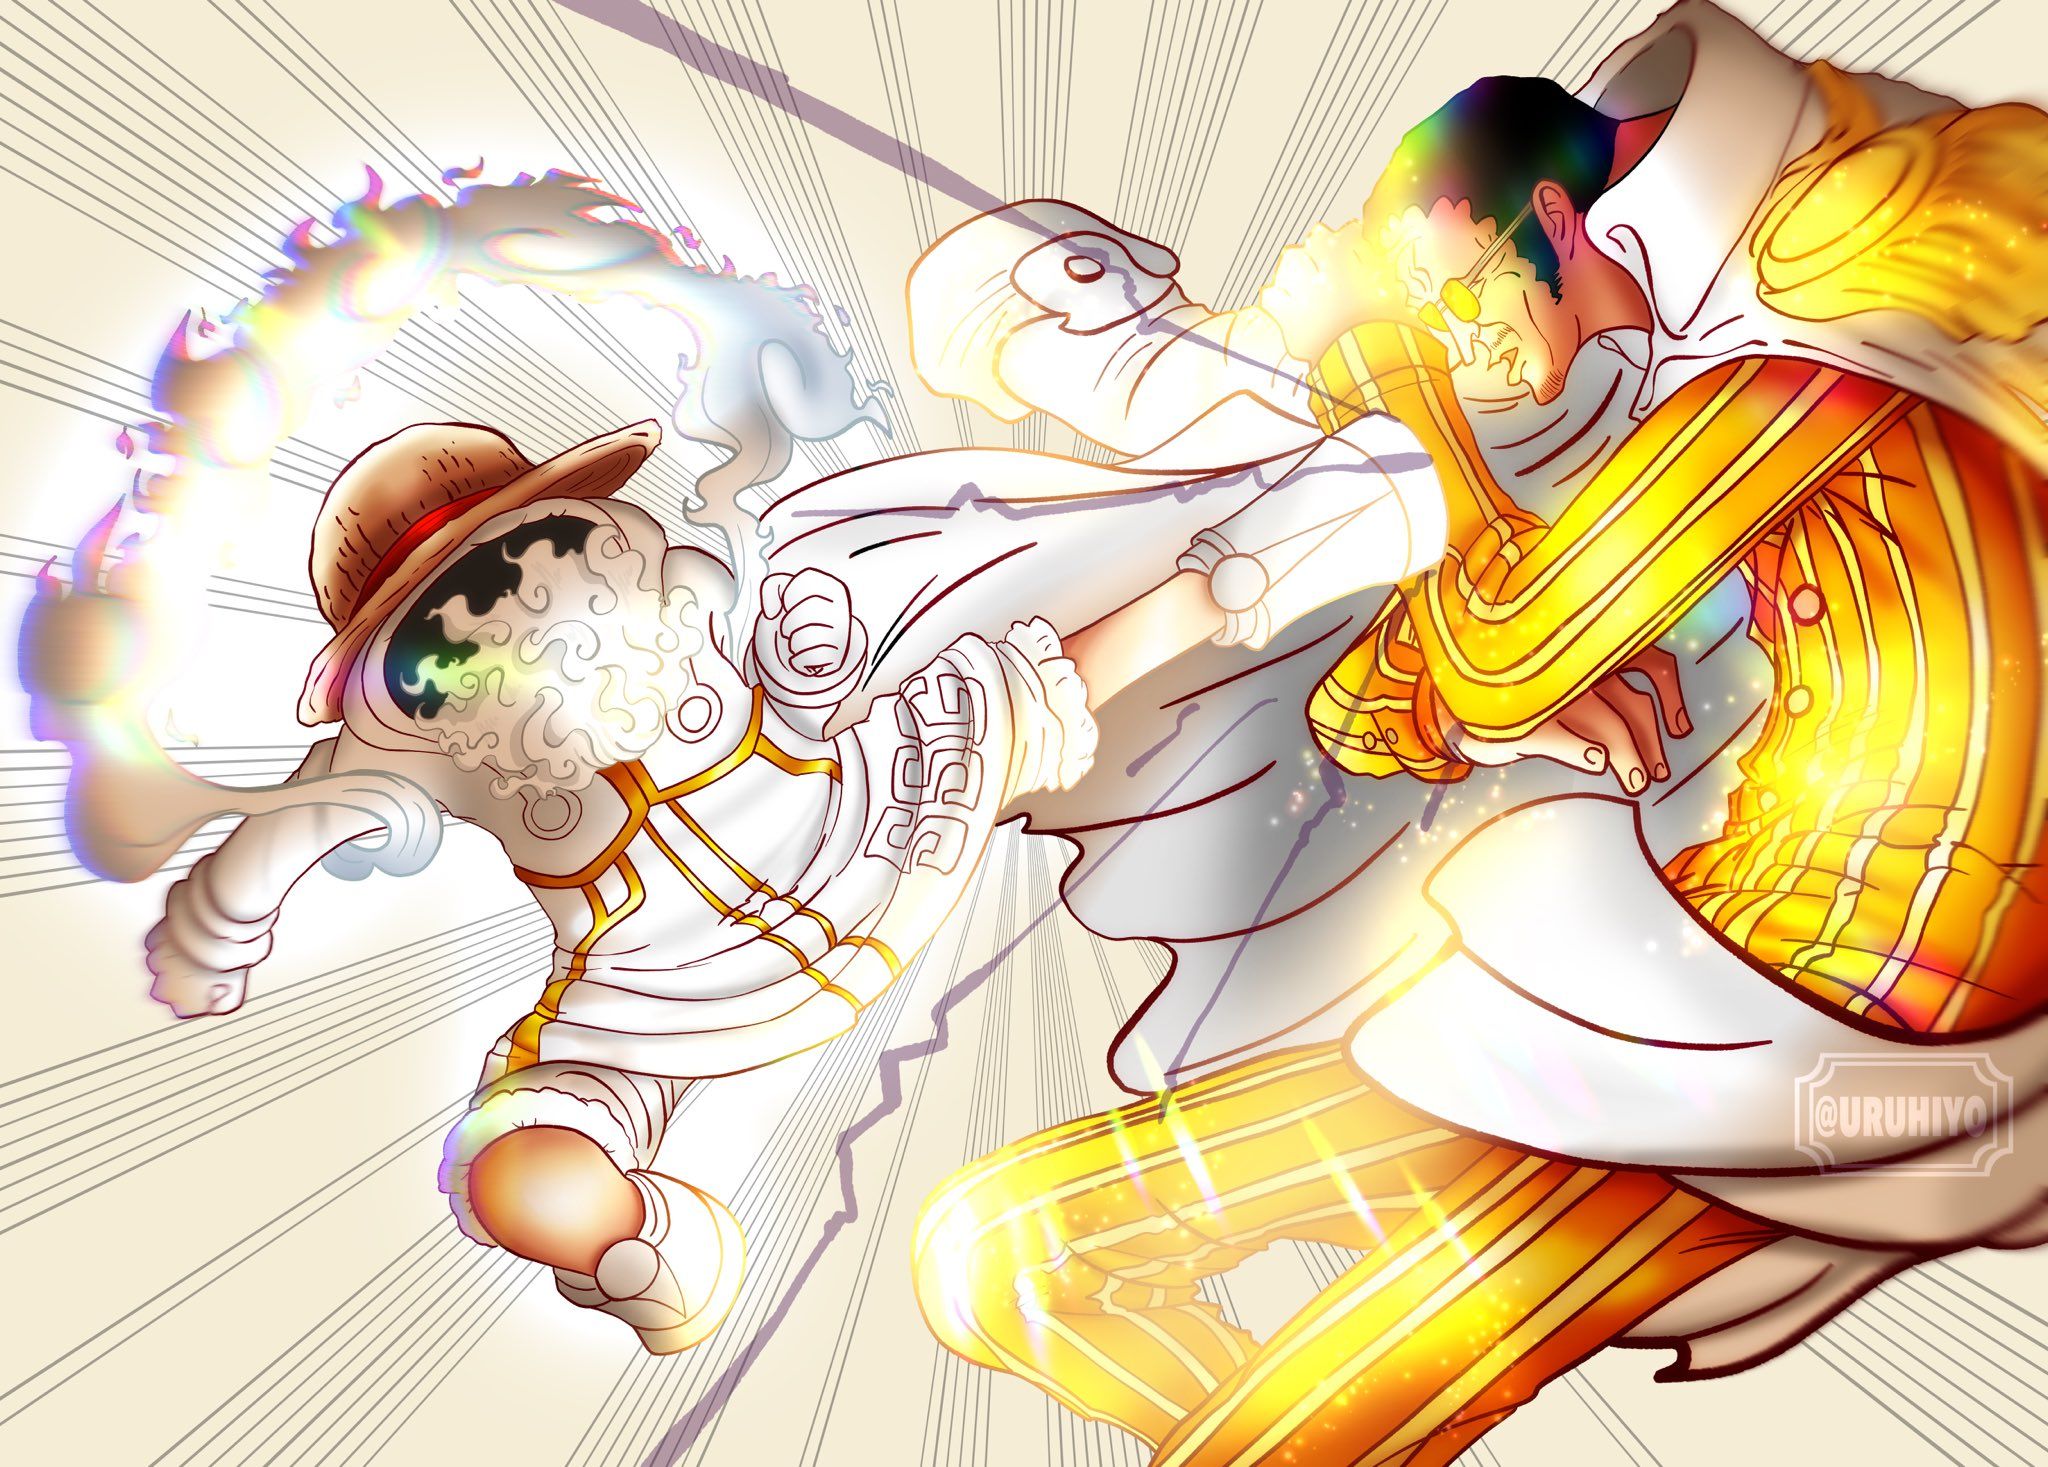 SPOILER One Piece 1092: Tendangan Gear 5 Luffy Membuat Jiwa Kizaru Terpisah dari Tubuh, Ternyata Monkey D Luffy Telah...